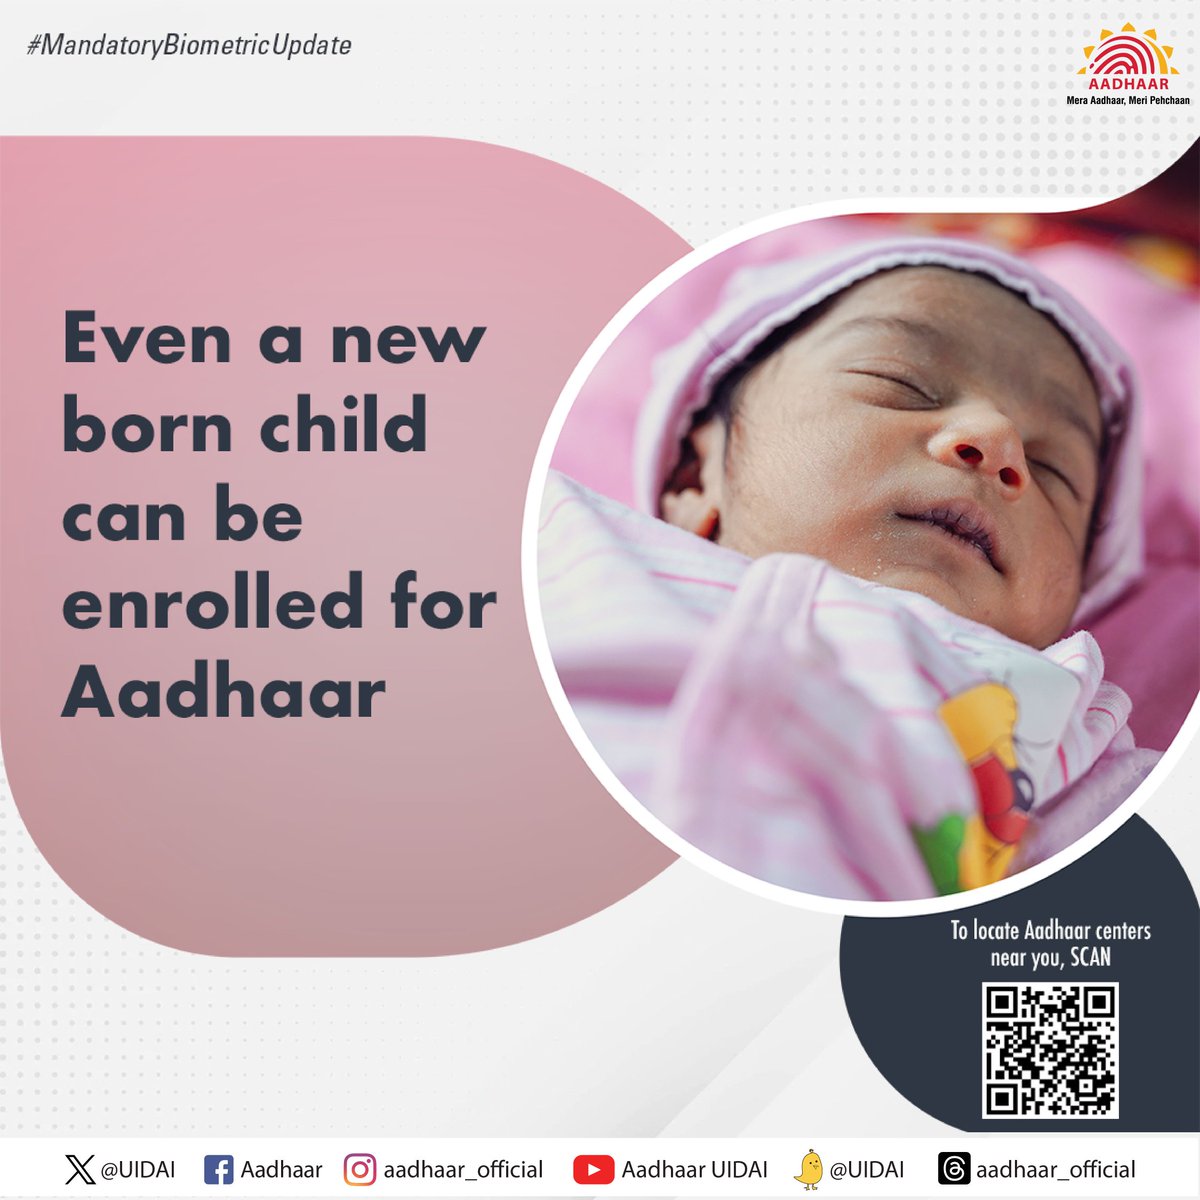 #बालआधार 
तुमच्या नवजात मुलाची जन्म प्रमाणपत्र आणि पालकांचा आधार क्रमांक देऊन #Aadhaar साठी नावनोंदणी करा. 
अधिकृत #AadhaarCentre शोधण्यासाठी येथे क्लिक करा bhuvan.nrsc.gov.in/aadhaar/
@UIDAI
@GoI_MeitY